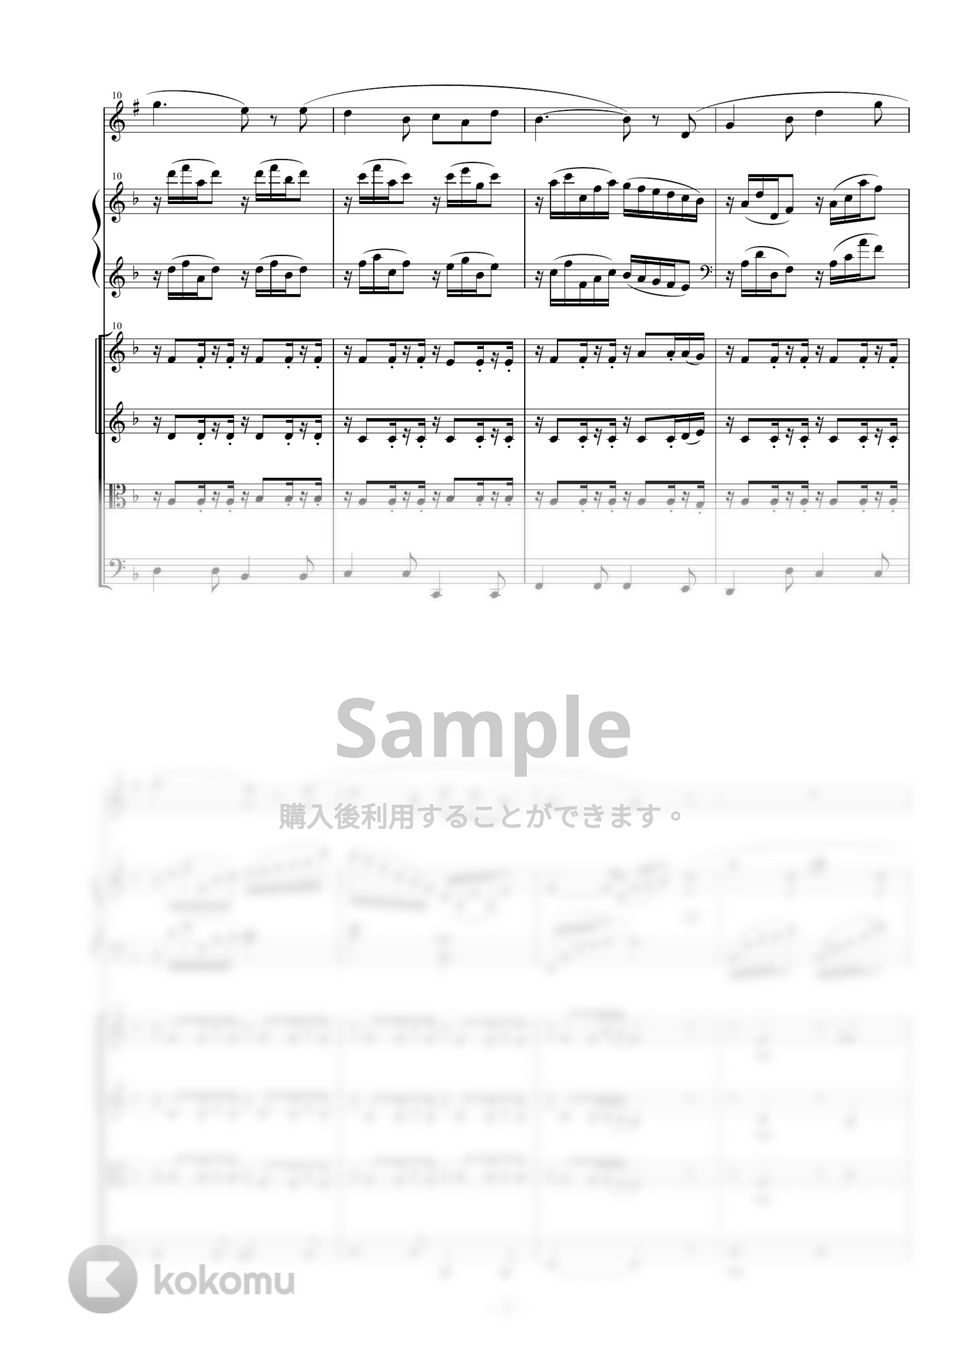 早春賦 (スコア+パート譜セット / ピアノ+トランペット+弦楽四重奏アレンジ) by 相澤洋正